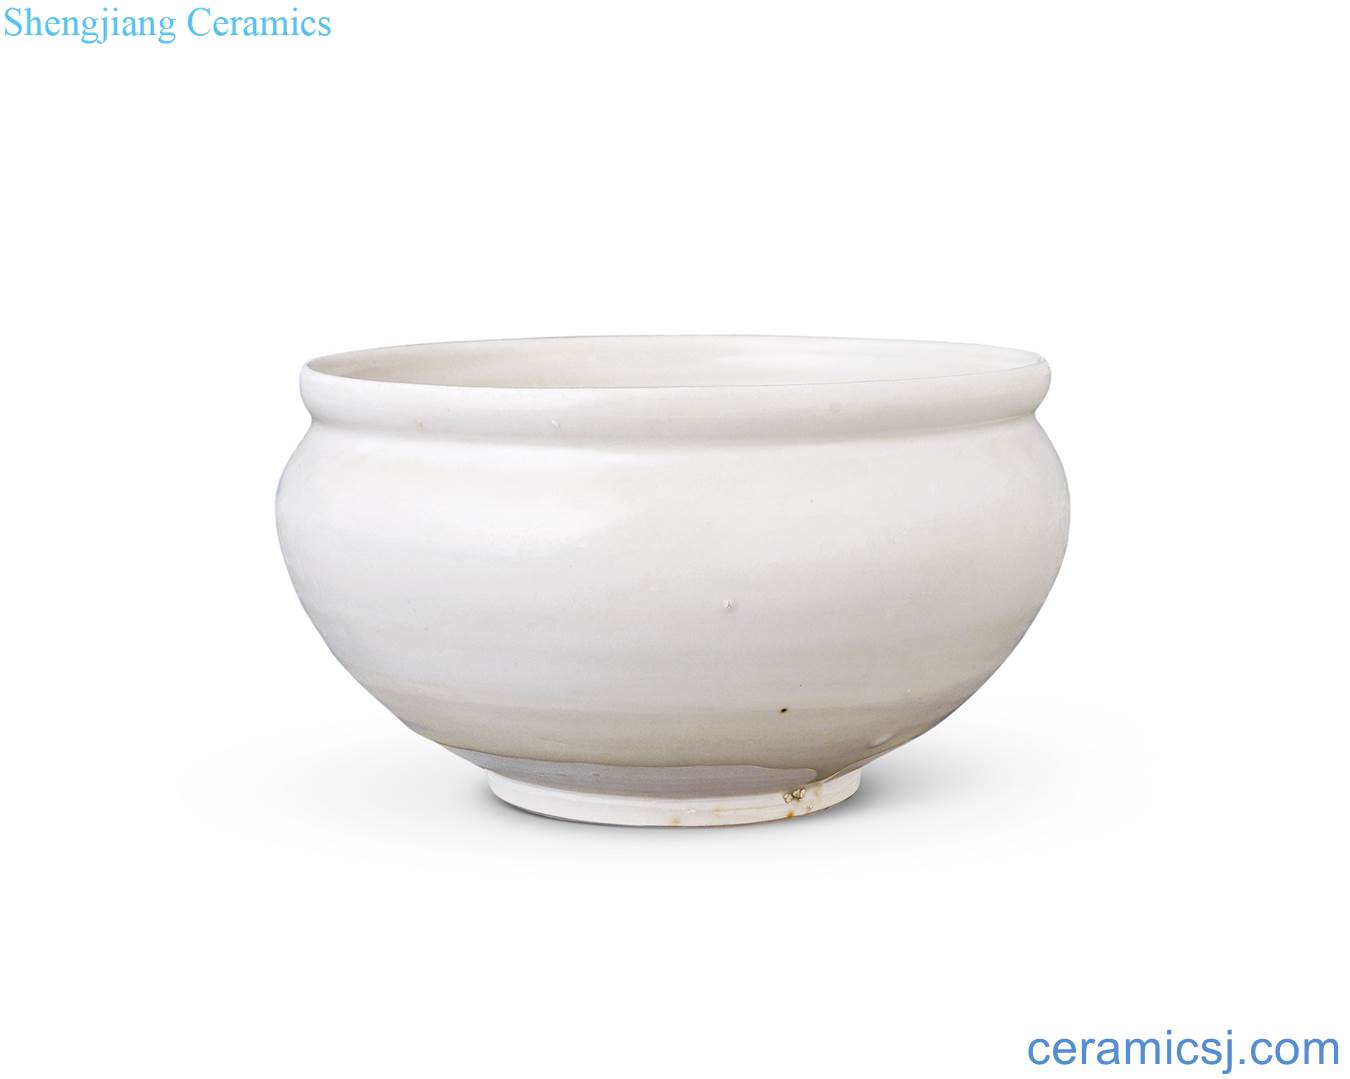 Song kiln is white glazed pot